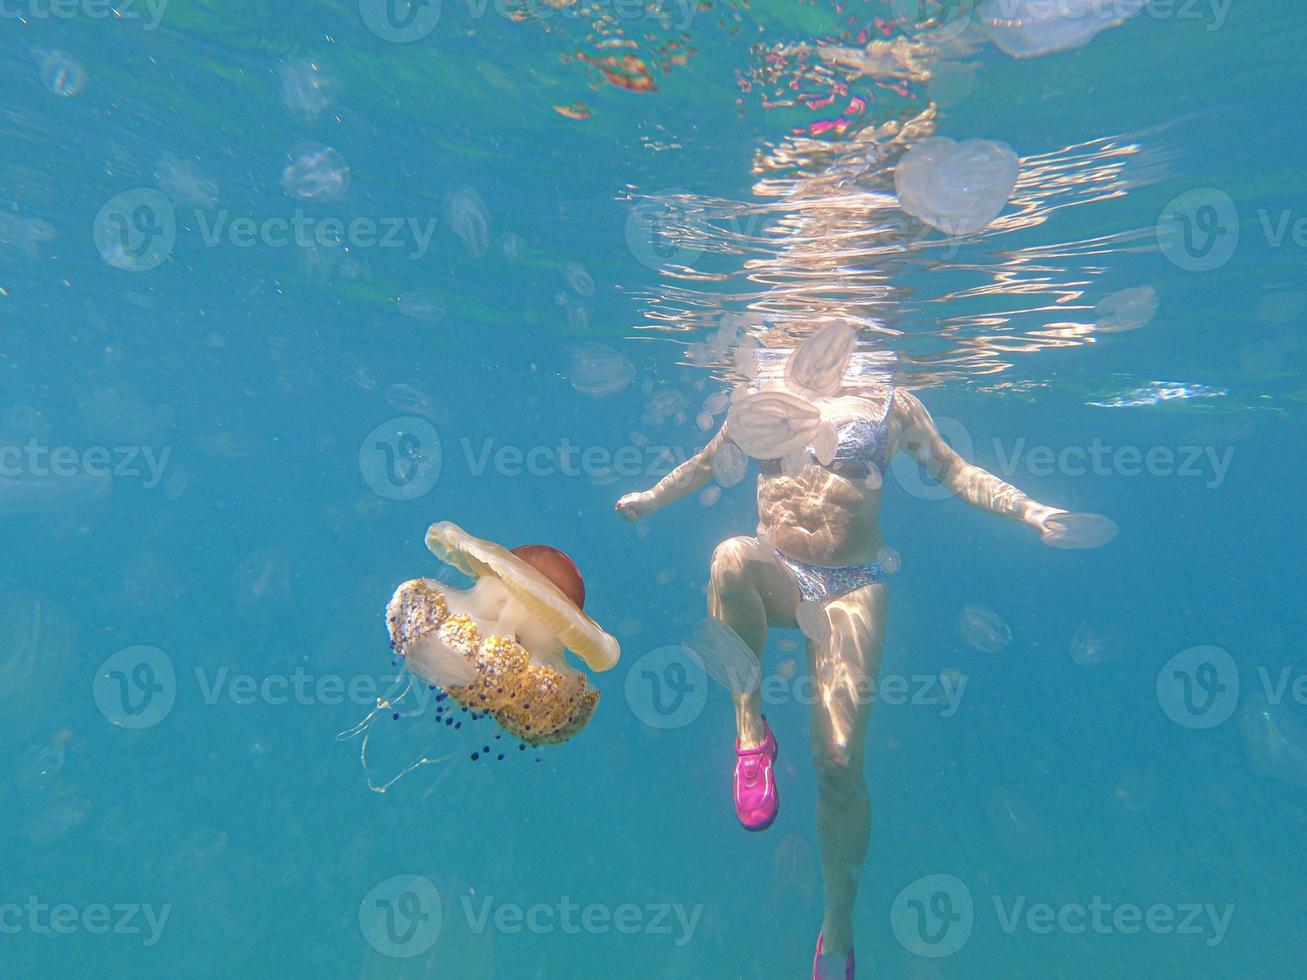 Medusas acanaladas de colores se acercan peligrosamente a un nadador foto